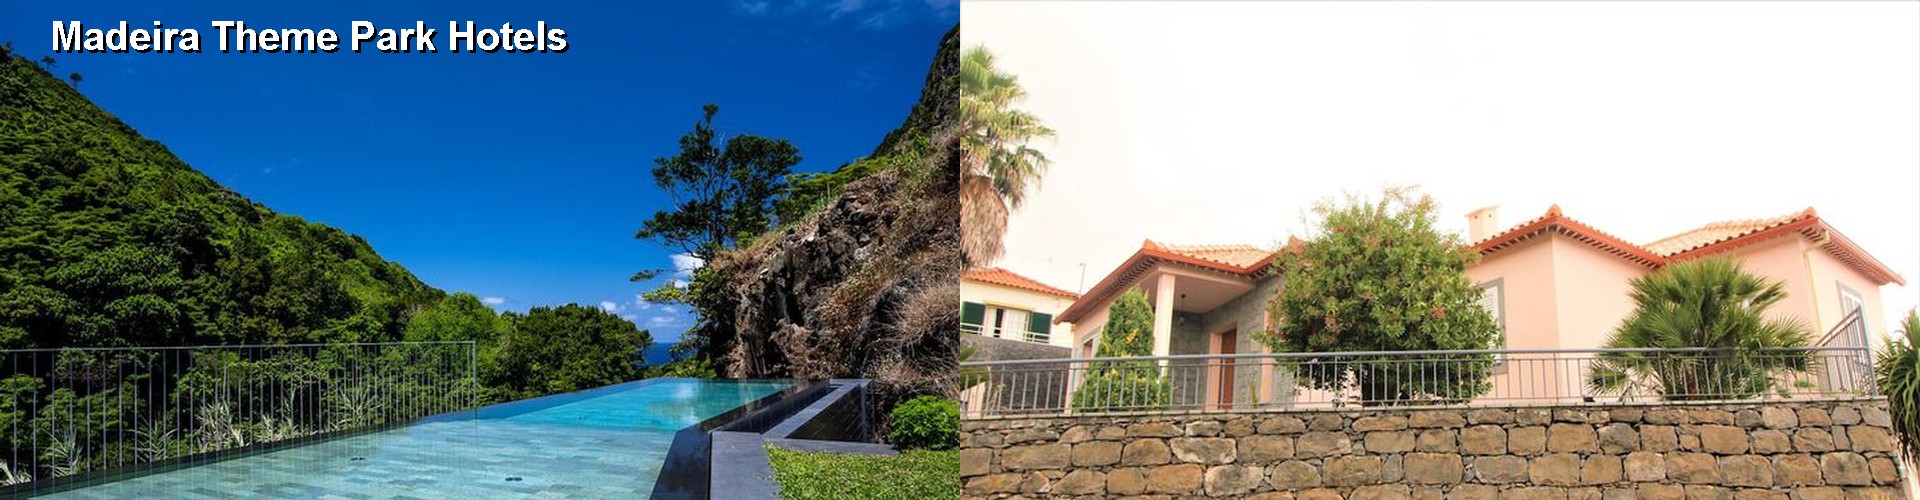 5 Best Hotels near Madeira Theme Park